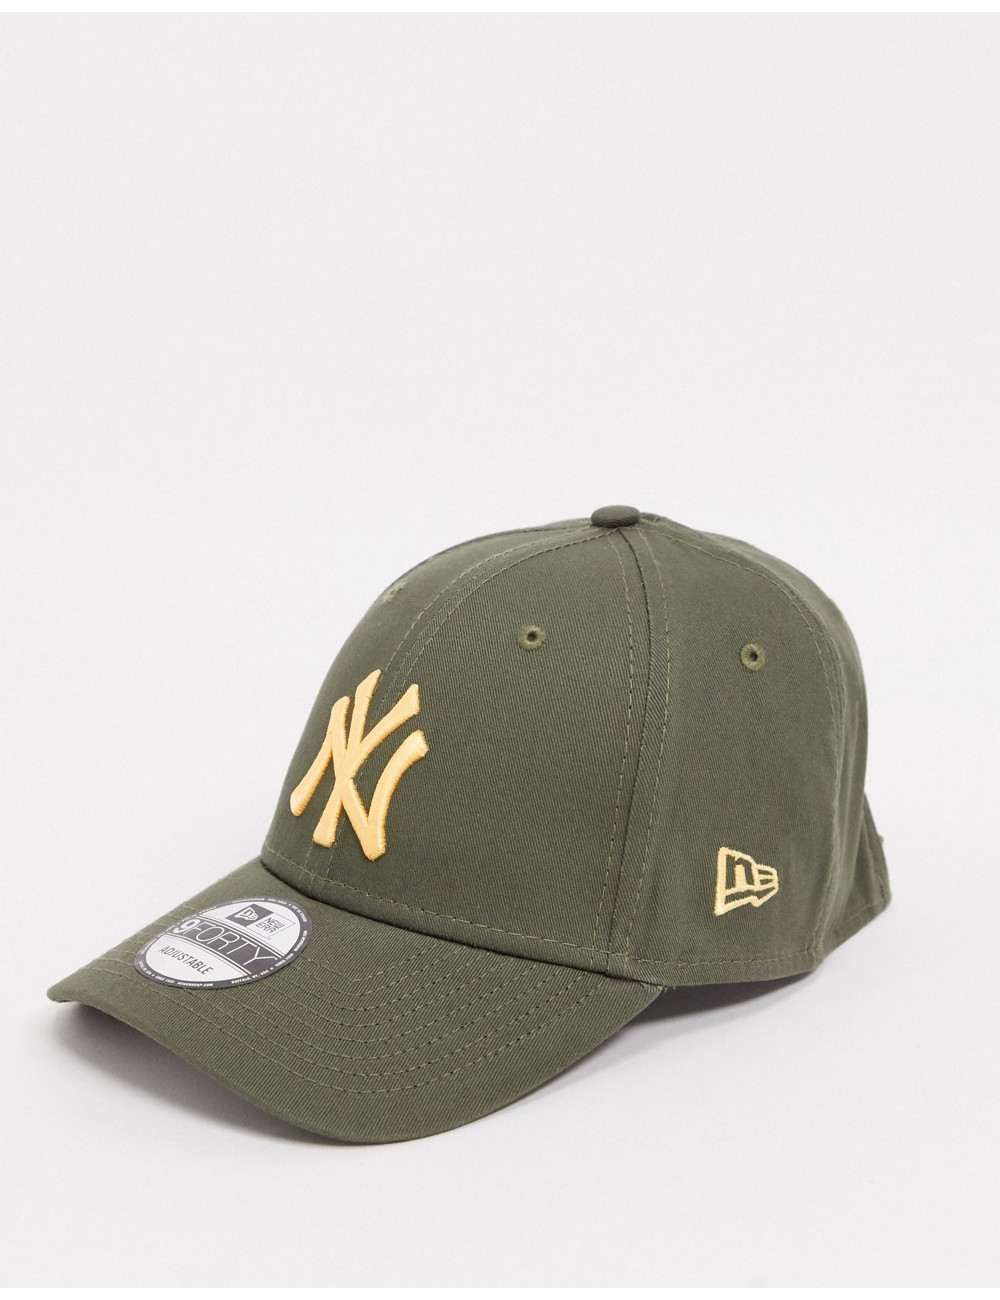 New Era 9forty NY cap in khaki